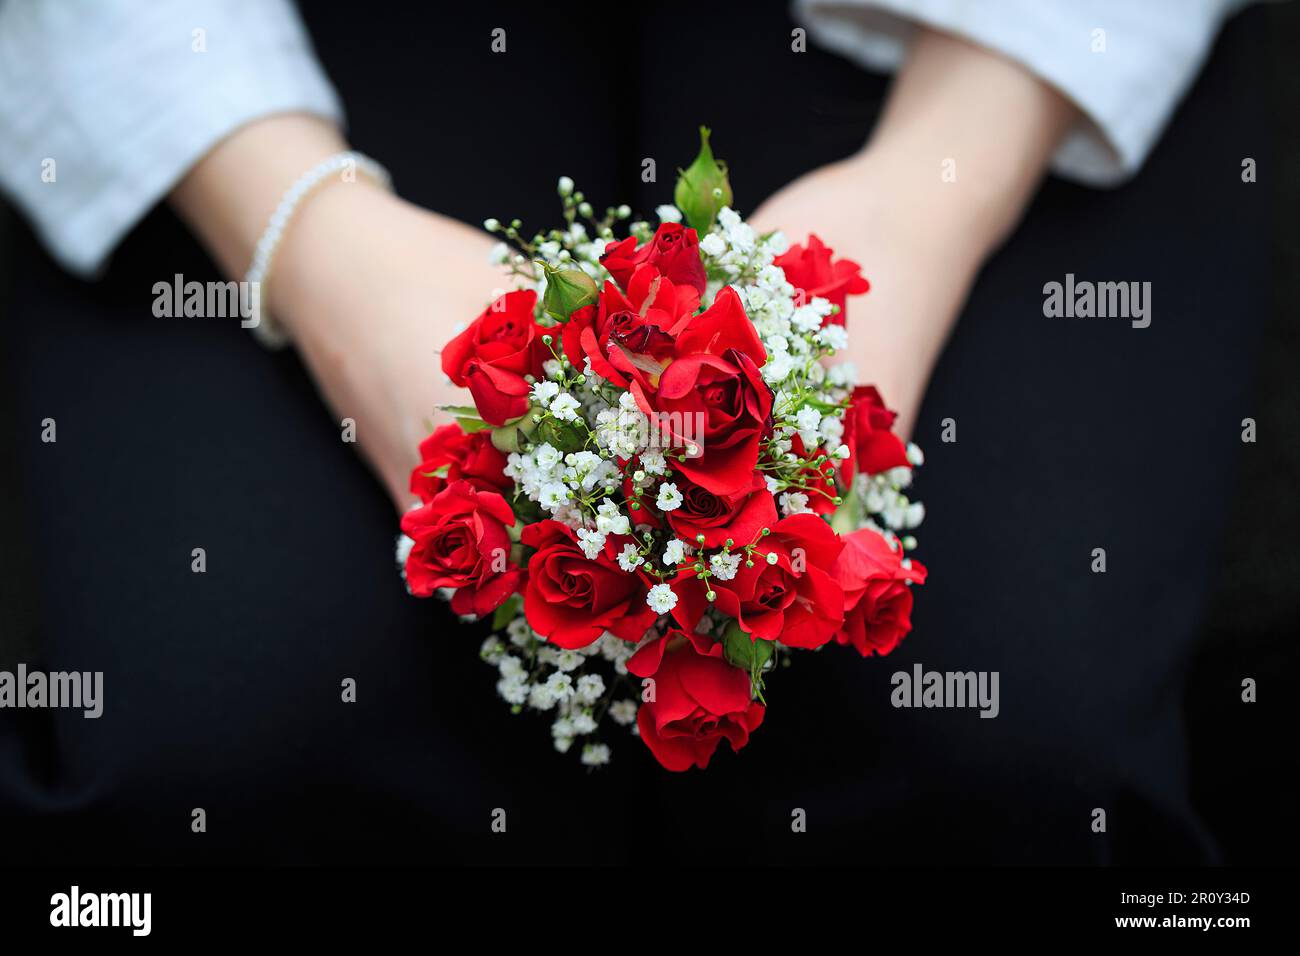 Zwei Hände halten einen kleinen roten Rosenstrauß Foto de stock